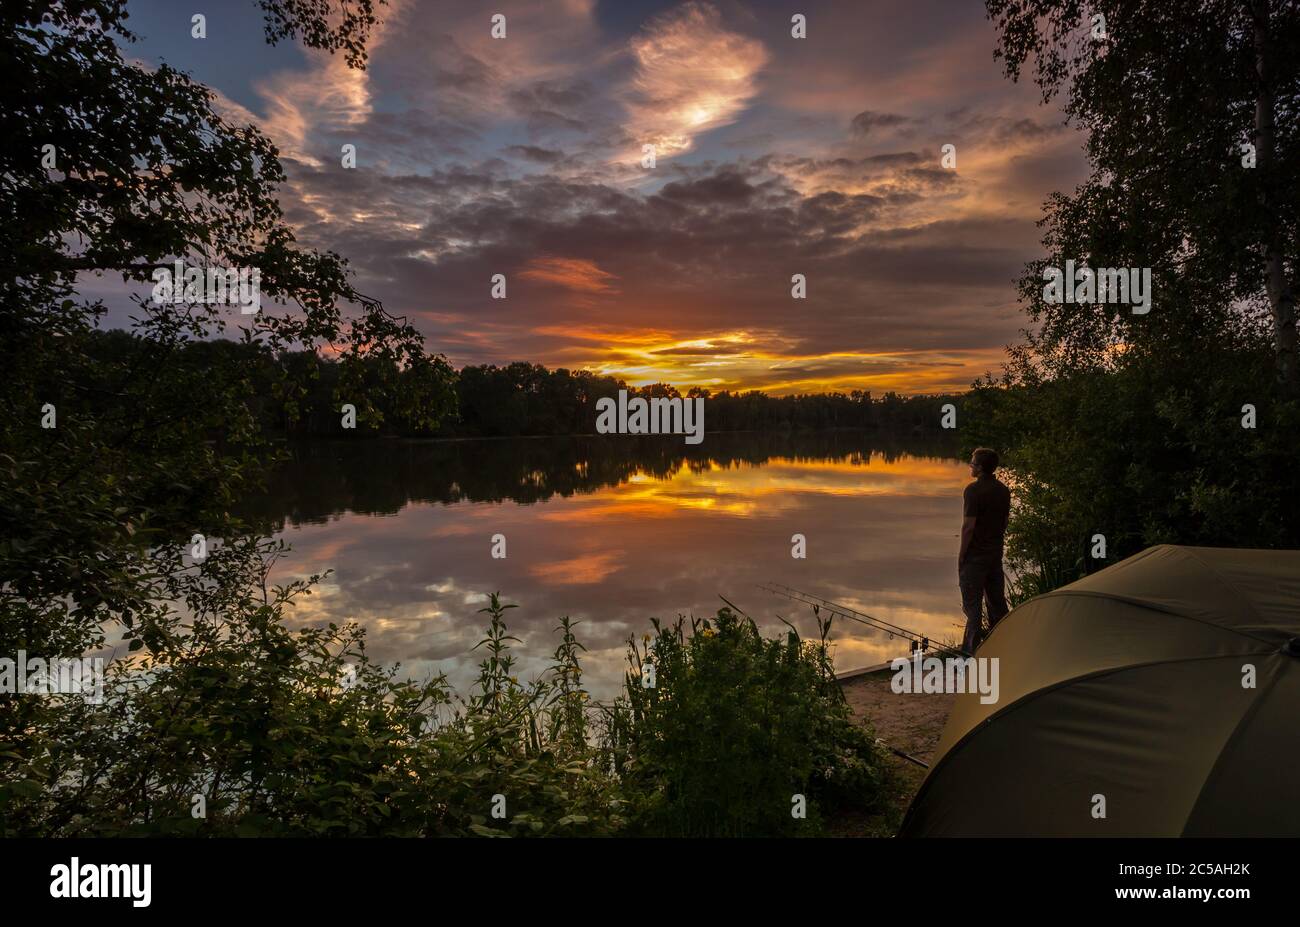 L'angler si trovava accanto alle canne da pesca, guardando il tramonto su un lago di pesca con carpe. Colori caldi dorati in un cielo estivo Foto Stock